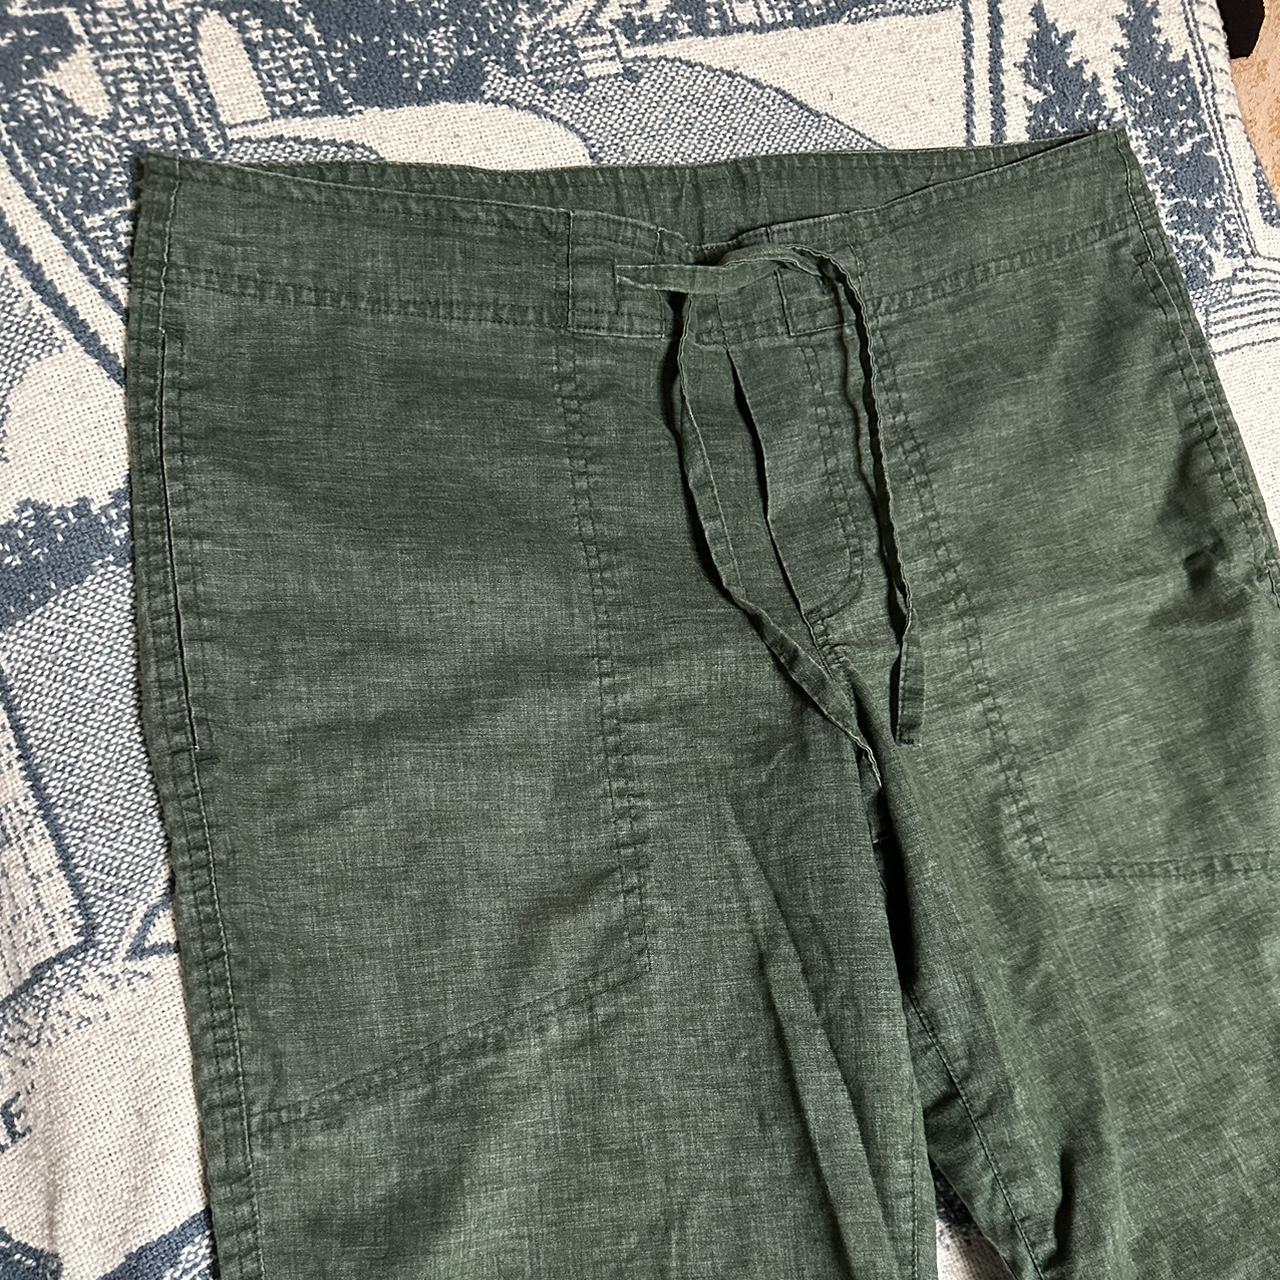 Green Linen Pants - lightweight - perfect condition... - Depop